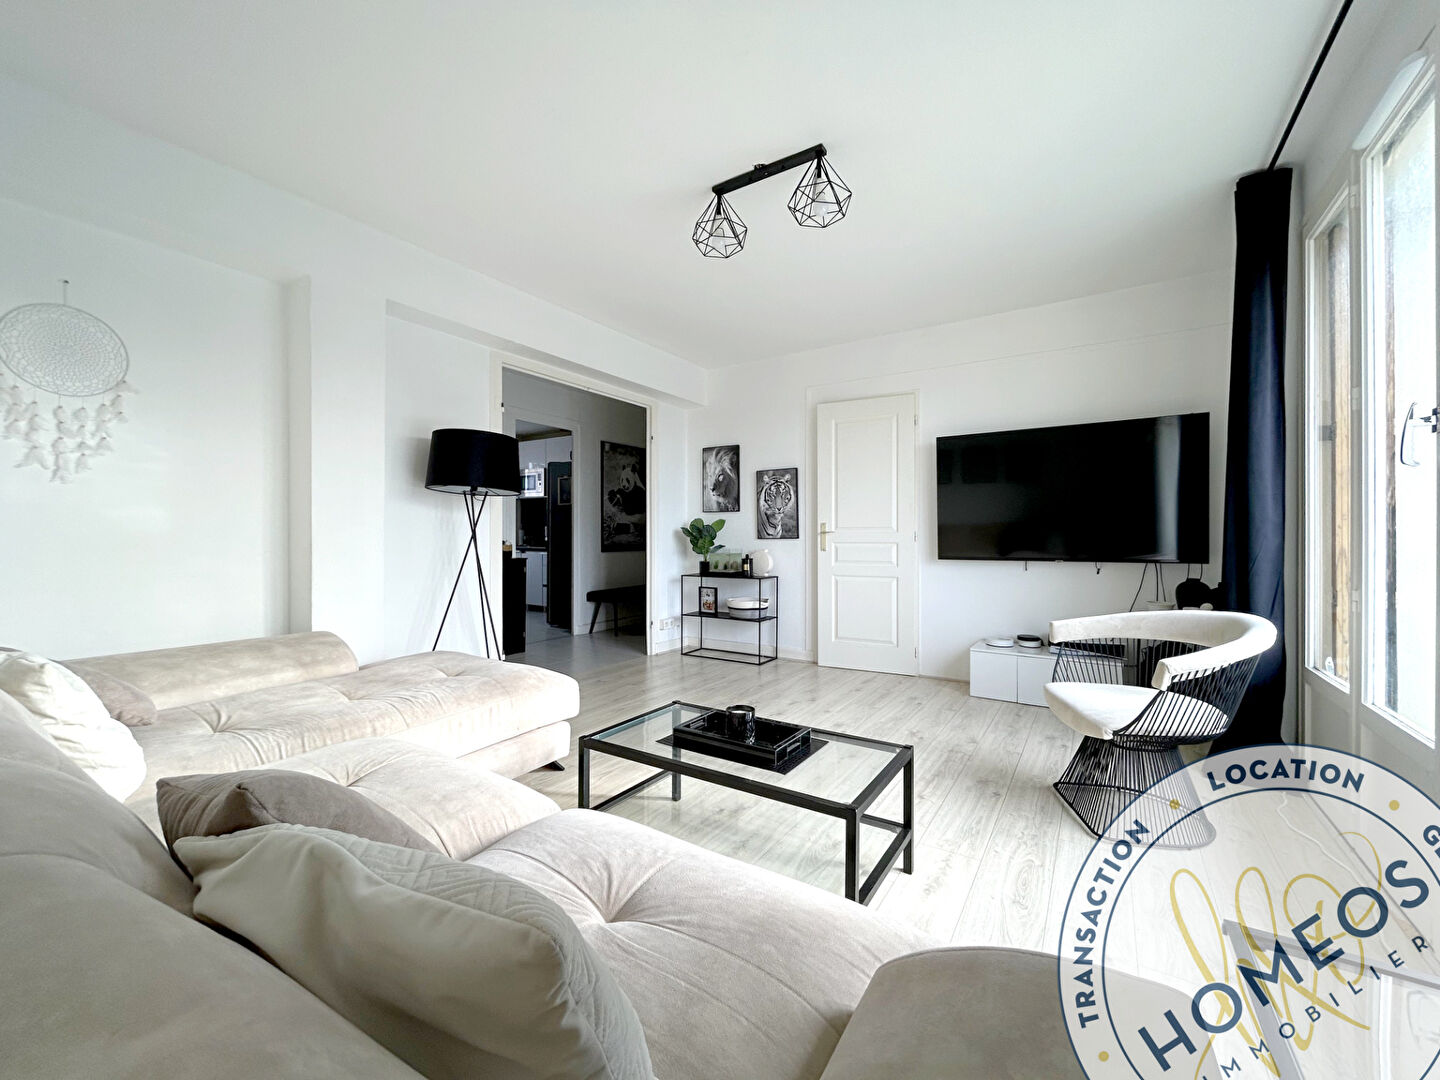 
Appartement Bourg-en-bresse 4 pièce(s) 71.98 m2
